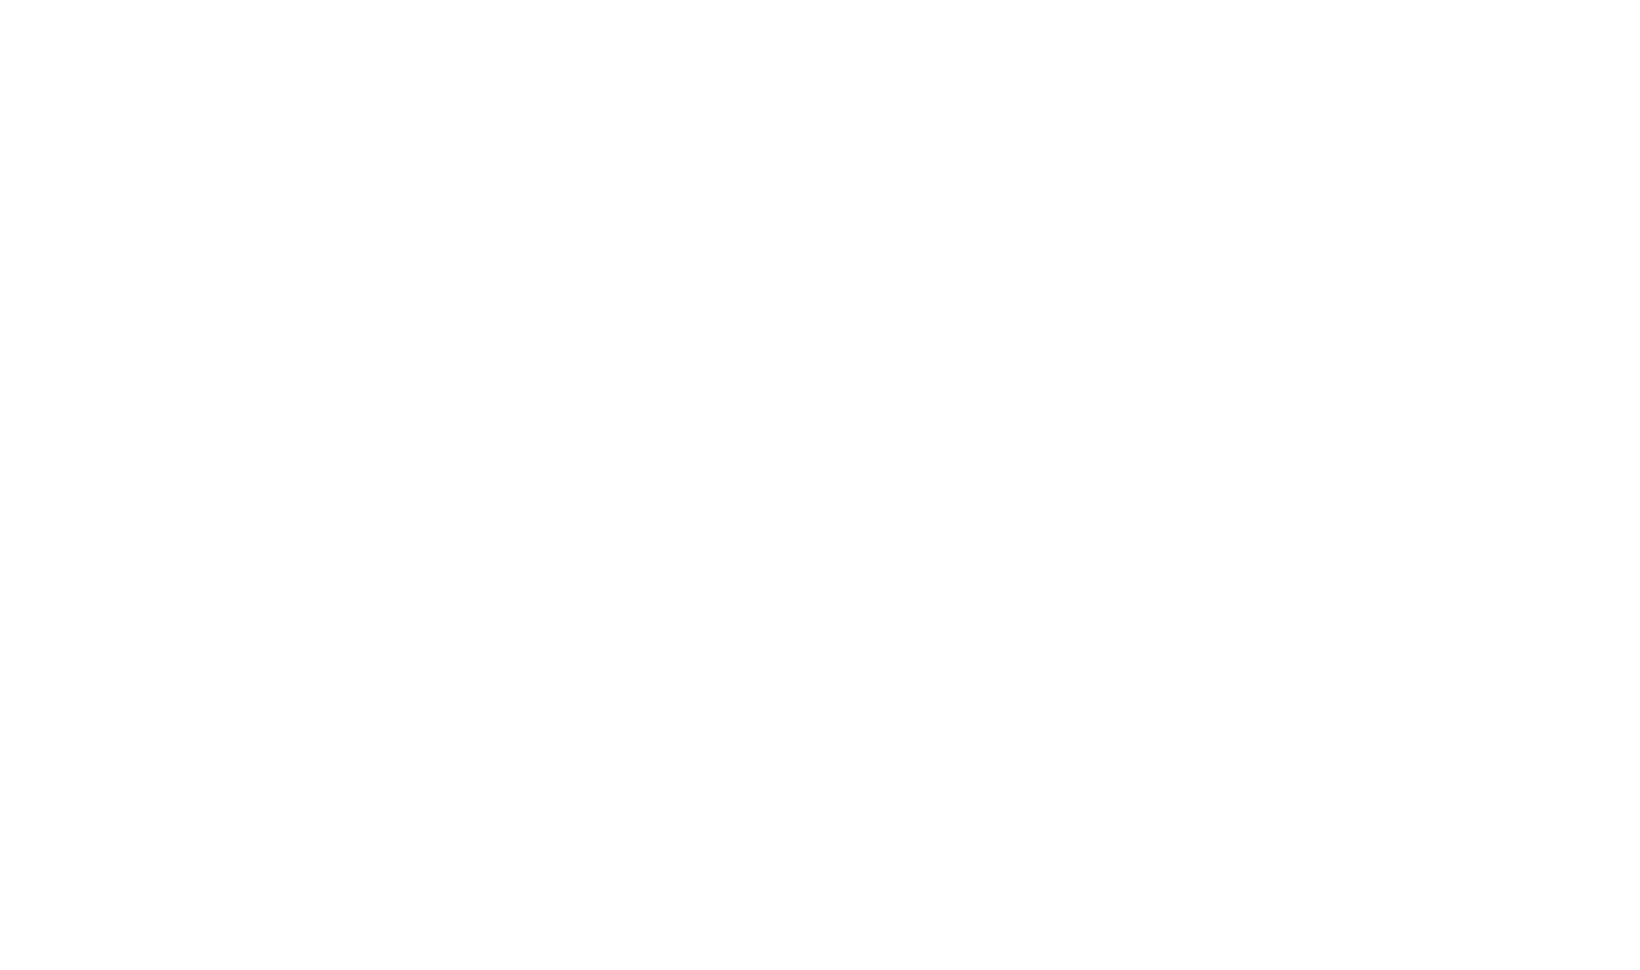 The Success Mindset Logo